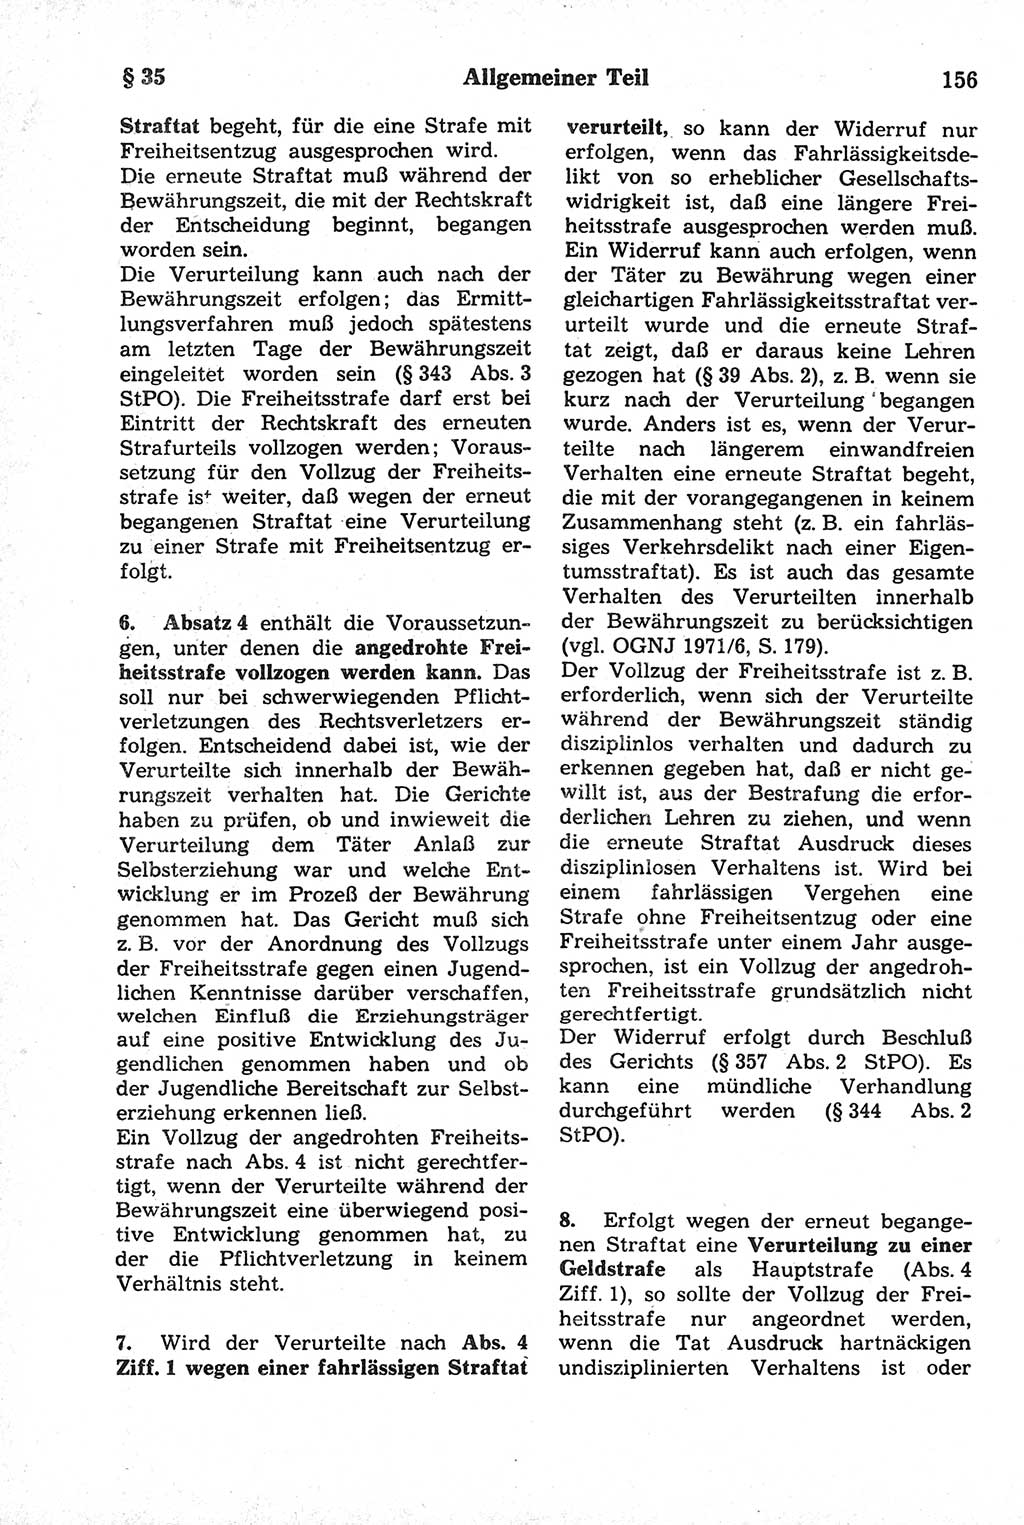 Strafrecht der Deutschen Demokratischen Republik (DDR), Kommentar zum Strafgesetzbuch (StGB) 1981, Seite 156 (Strafr. DDR Komm. StGB 1981, S. 156)